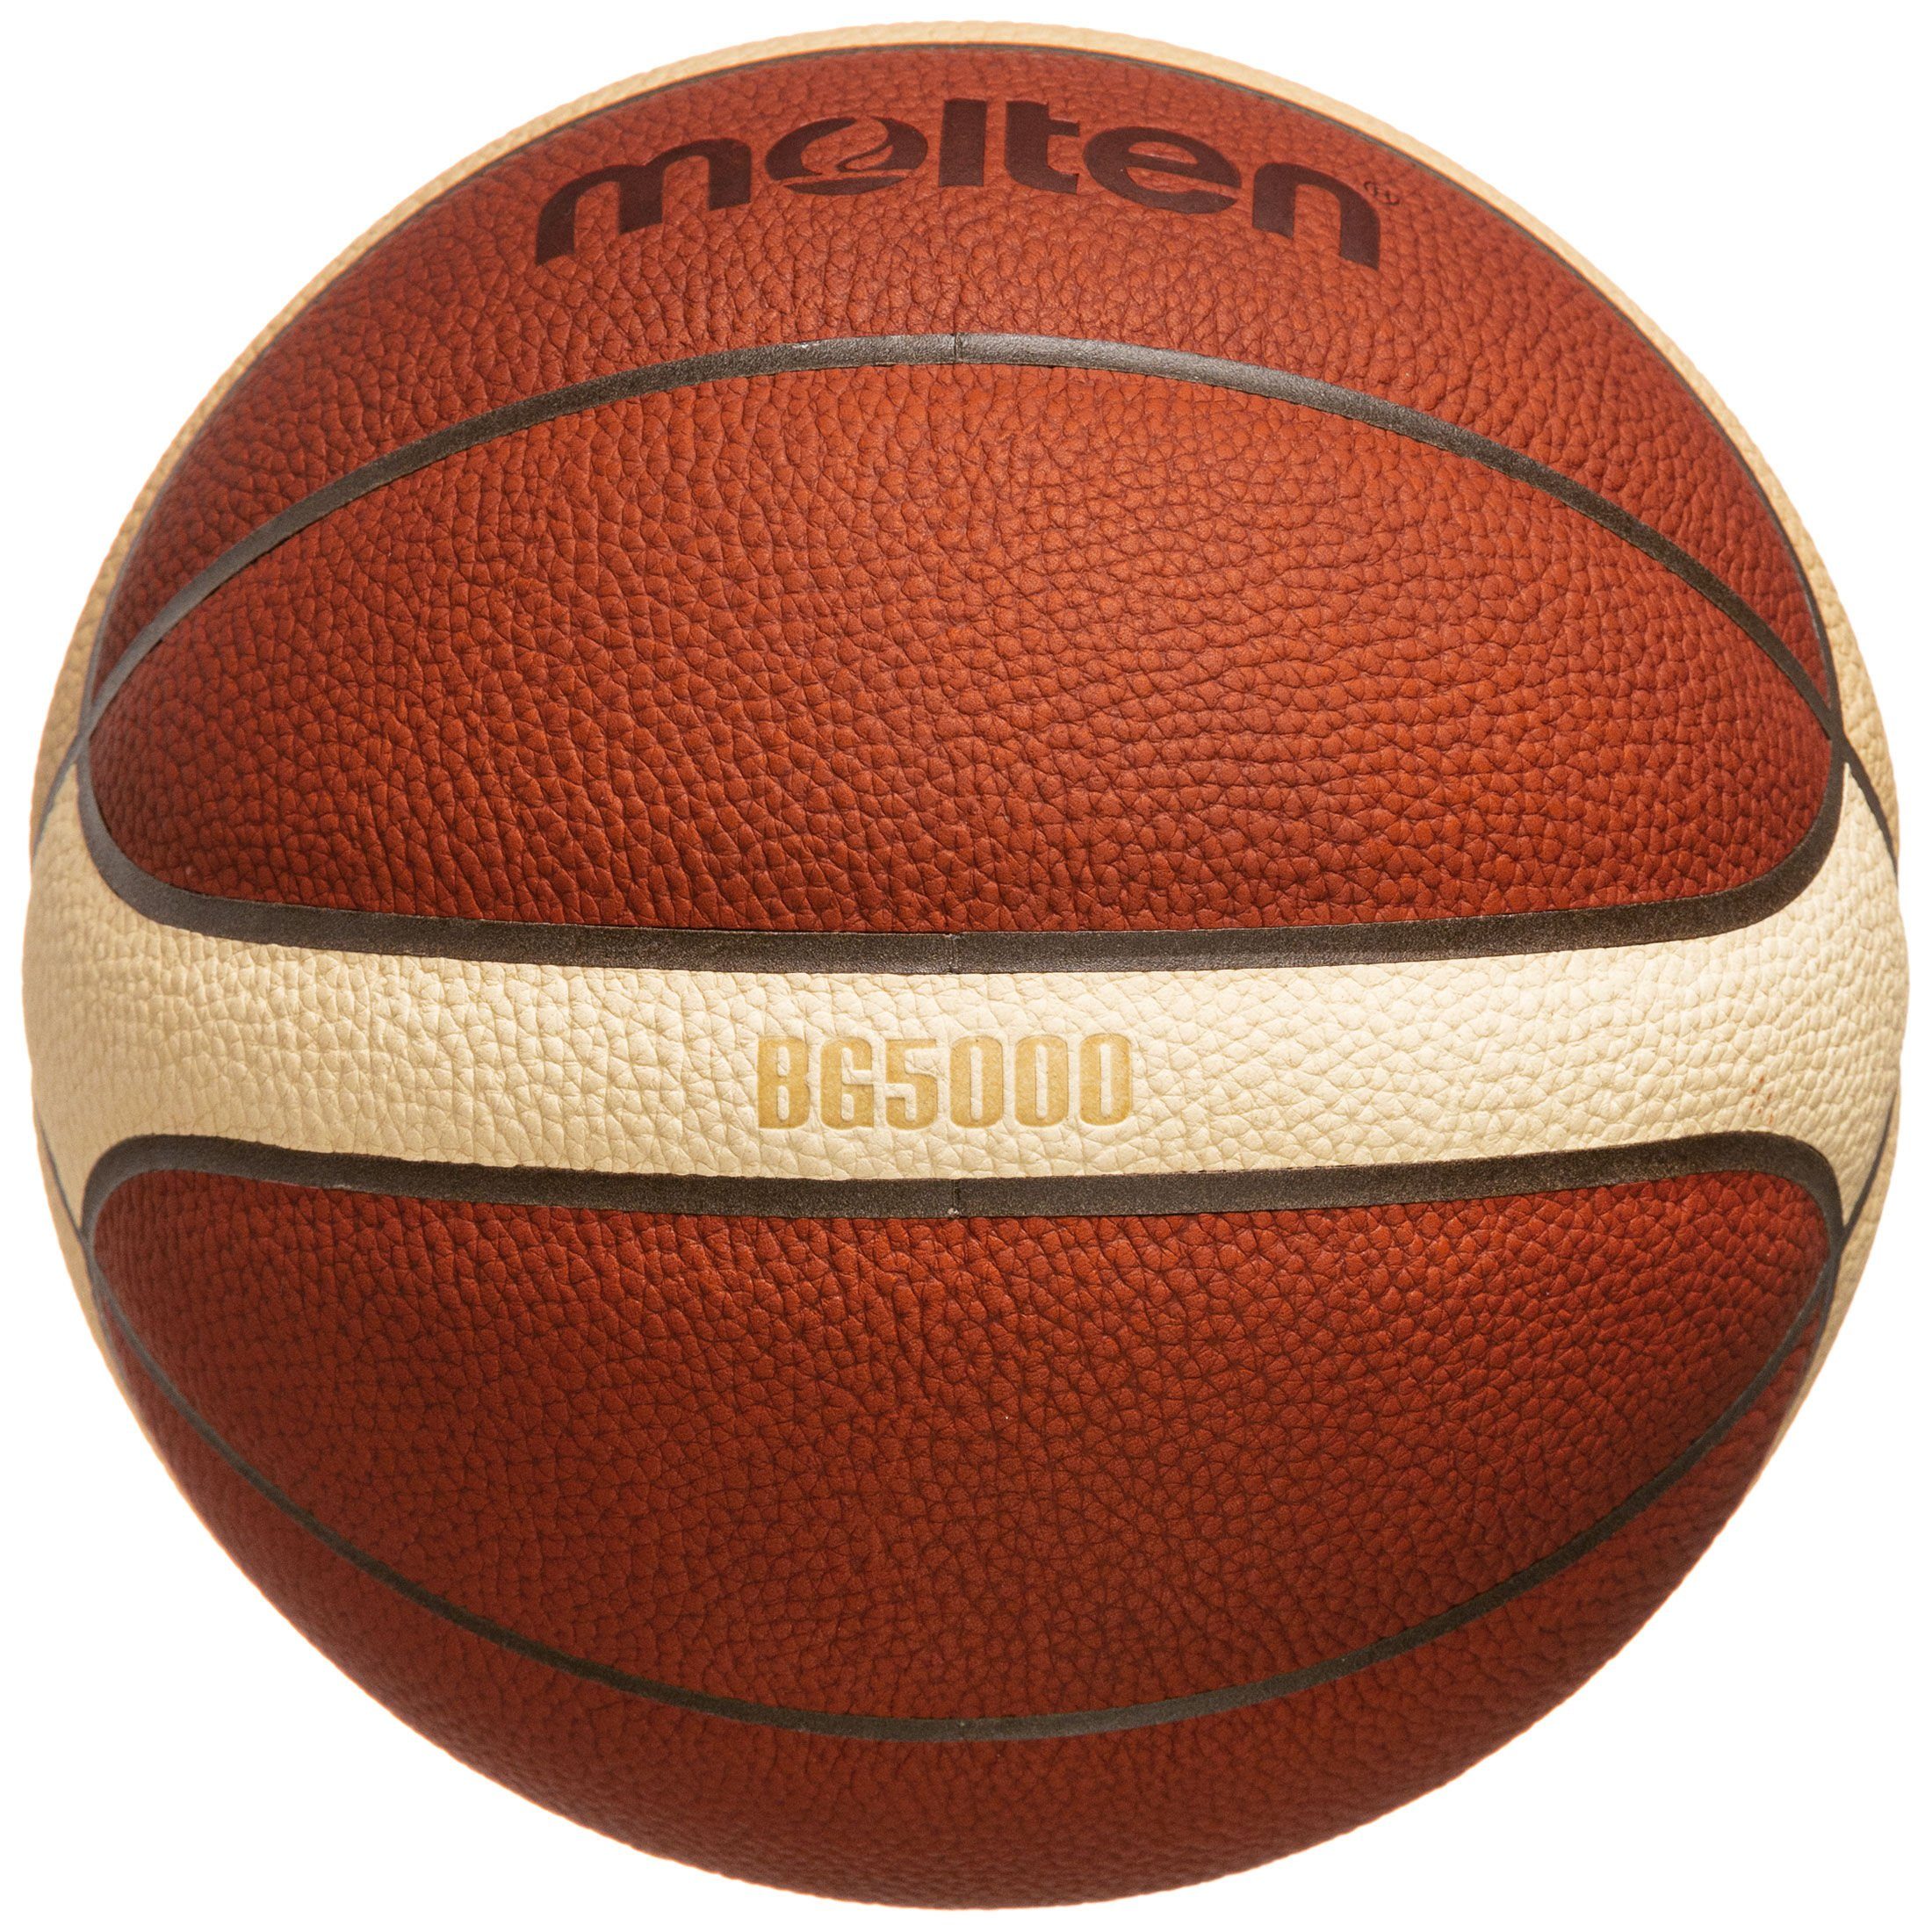 Molten Basketball Official FIBA Game Basketball